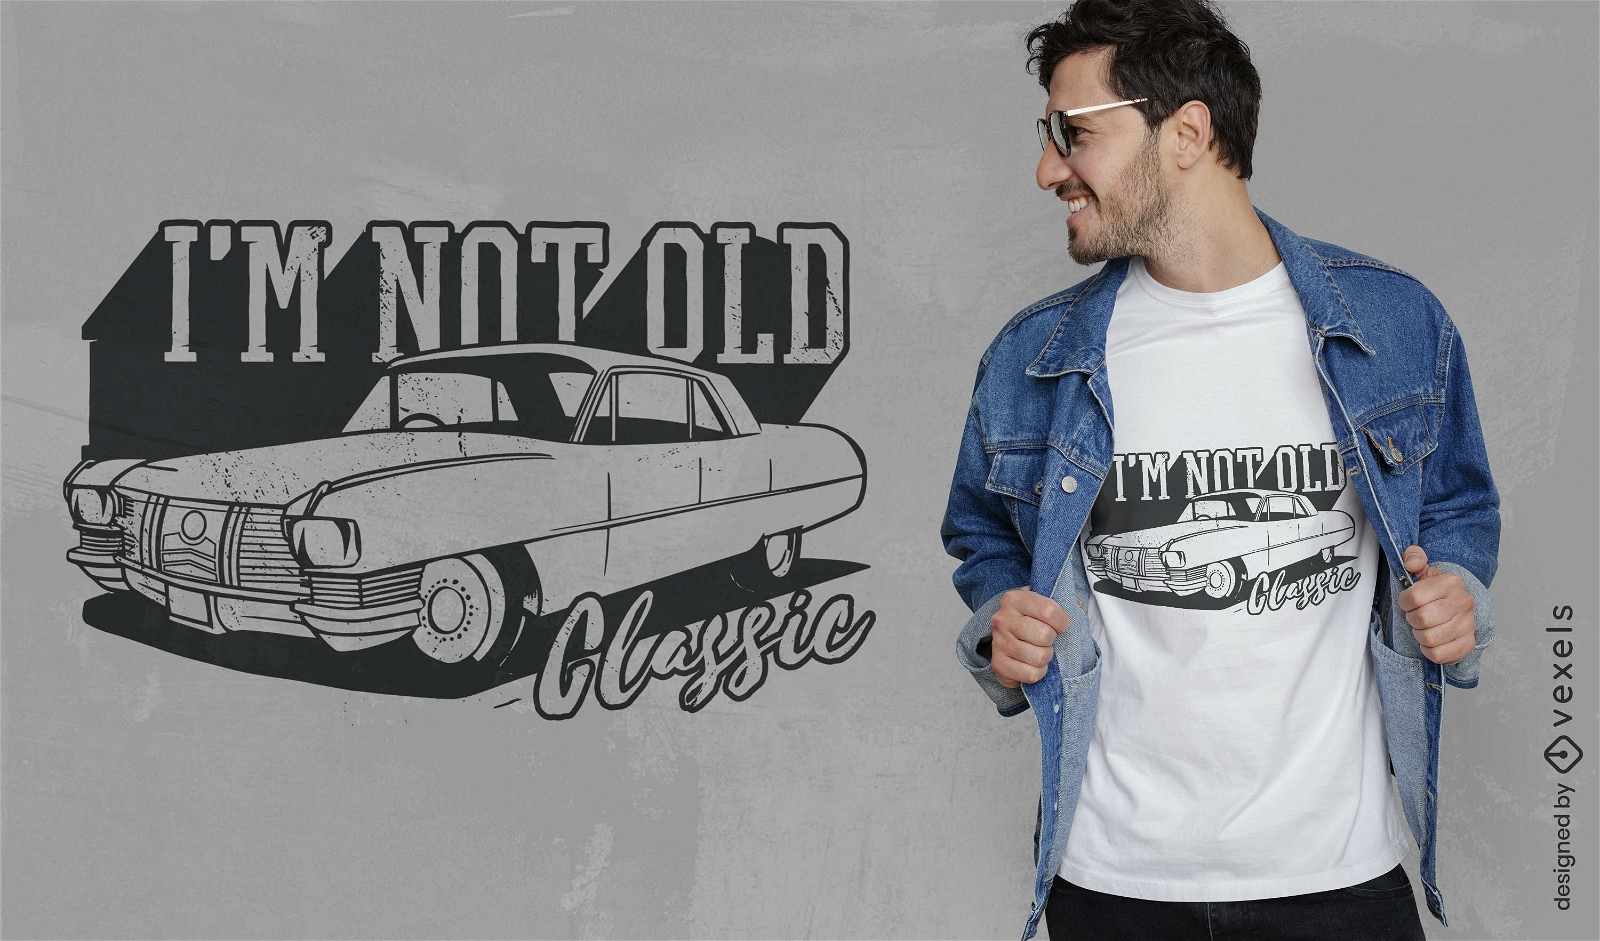 Classic vintage car quote t-shirt design